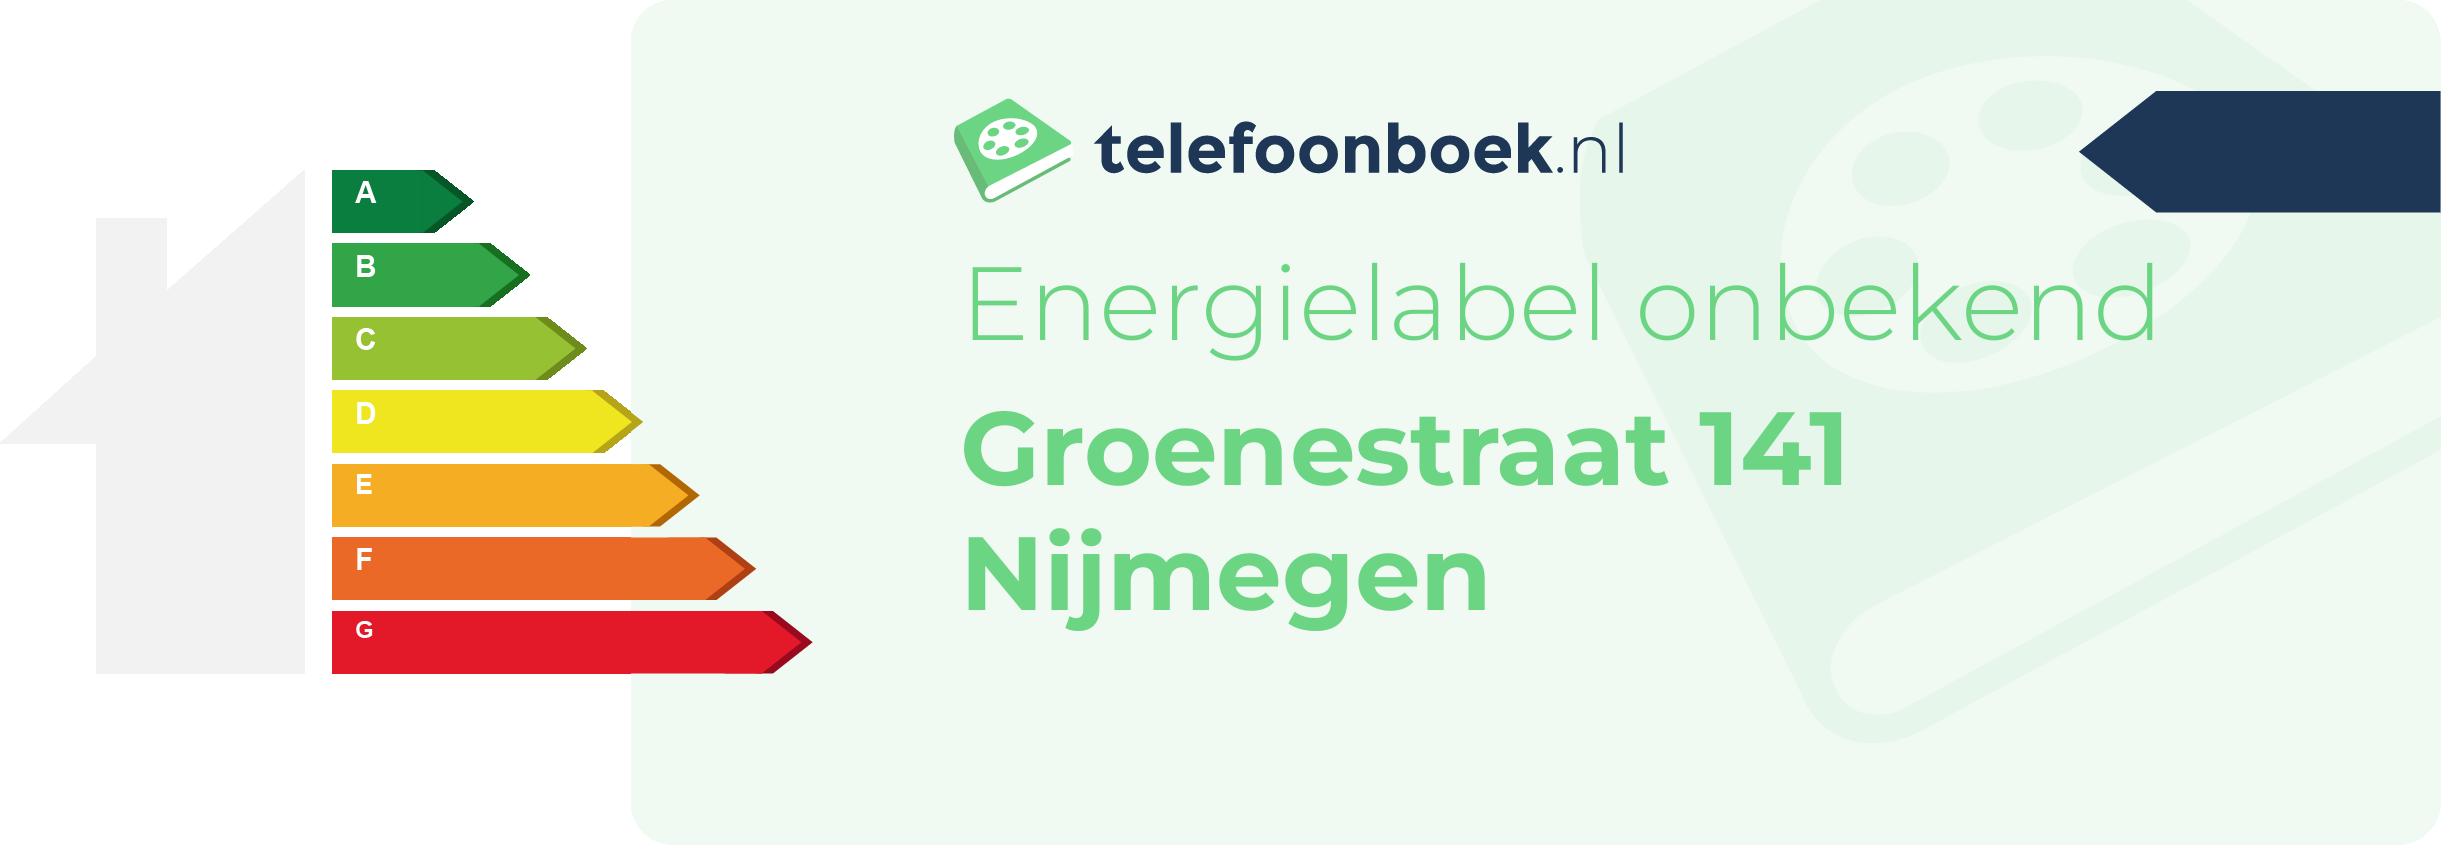 Energielabel Groenestraat 141 Nijmegen